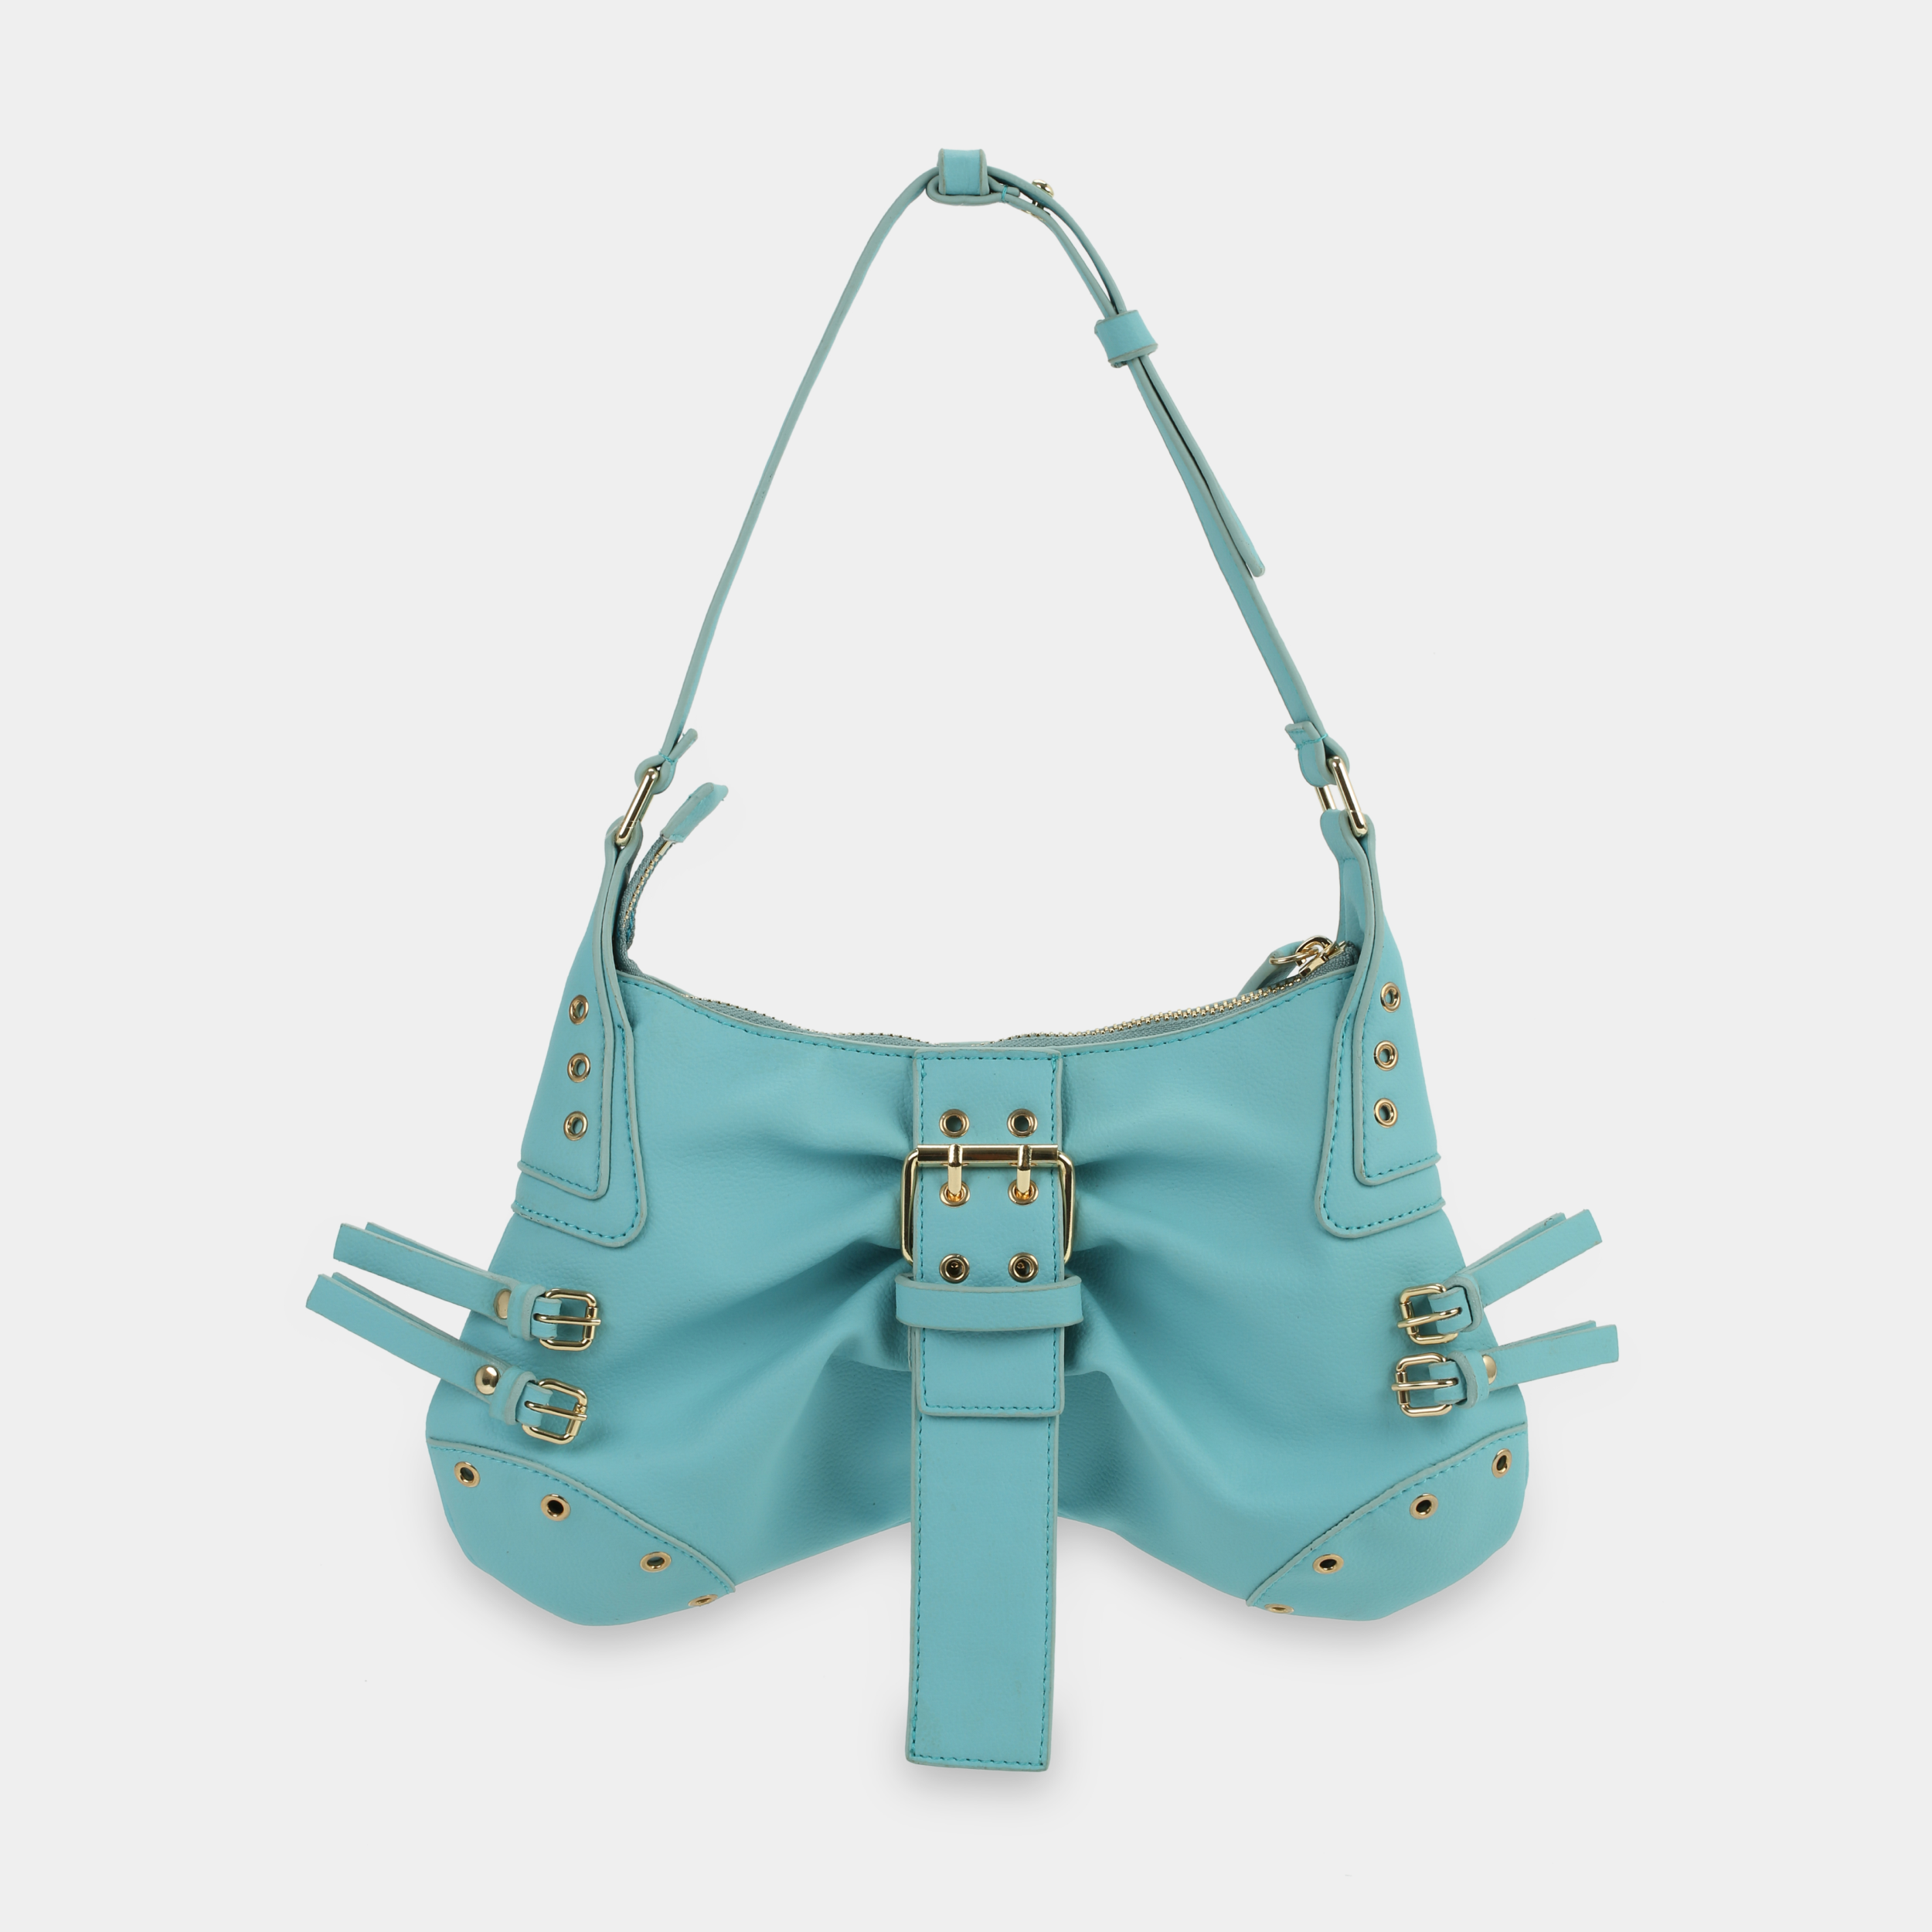 BUTTERFLY Handbag in Light Blue